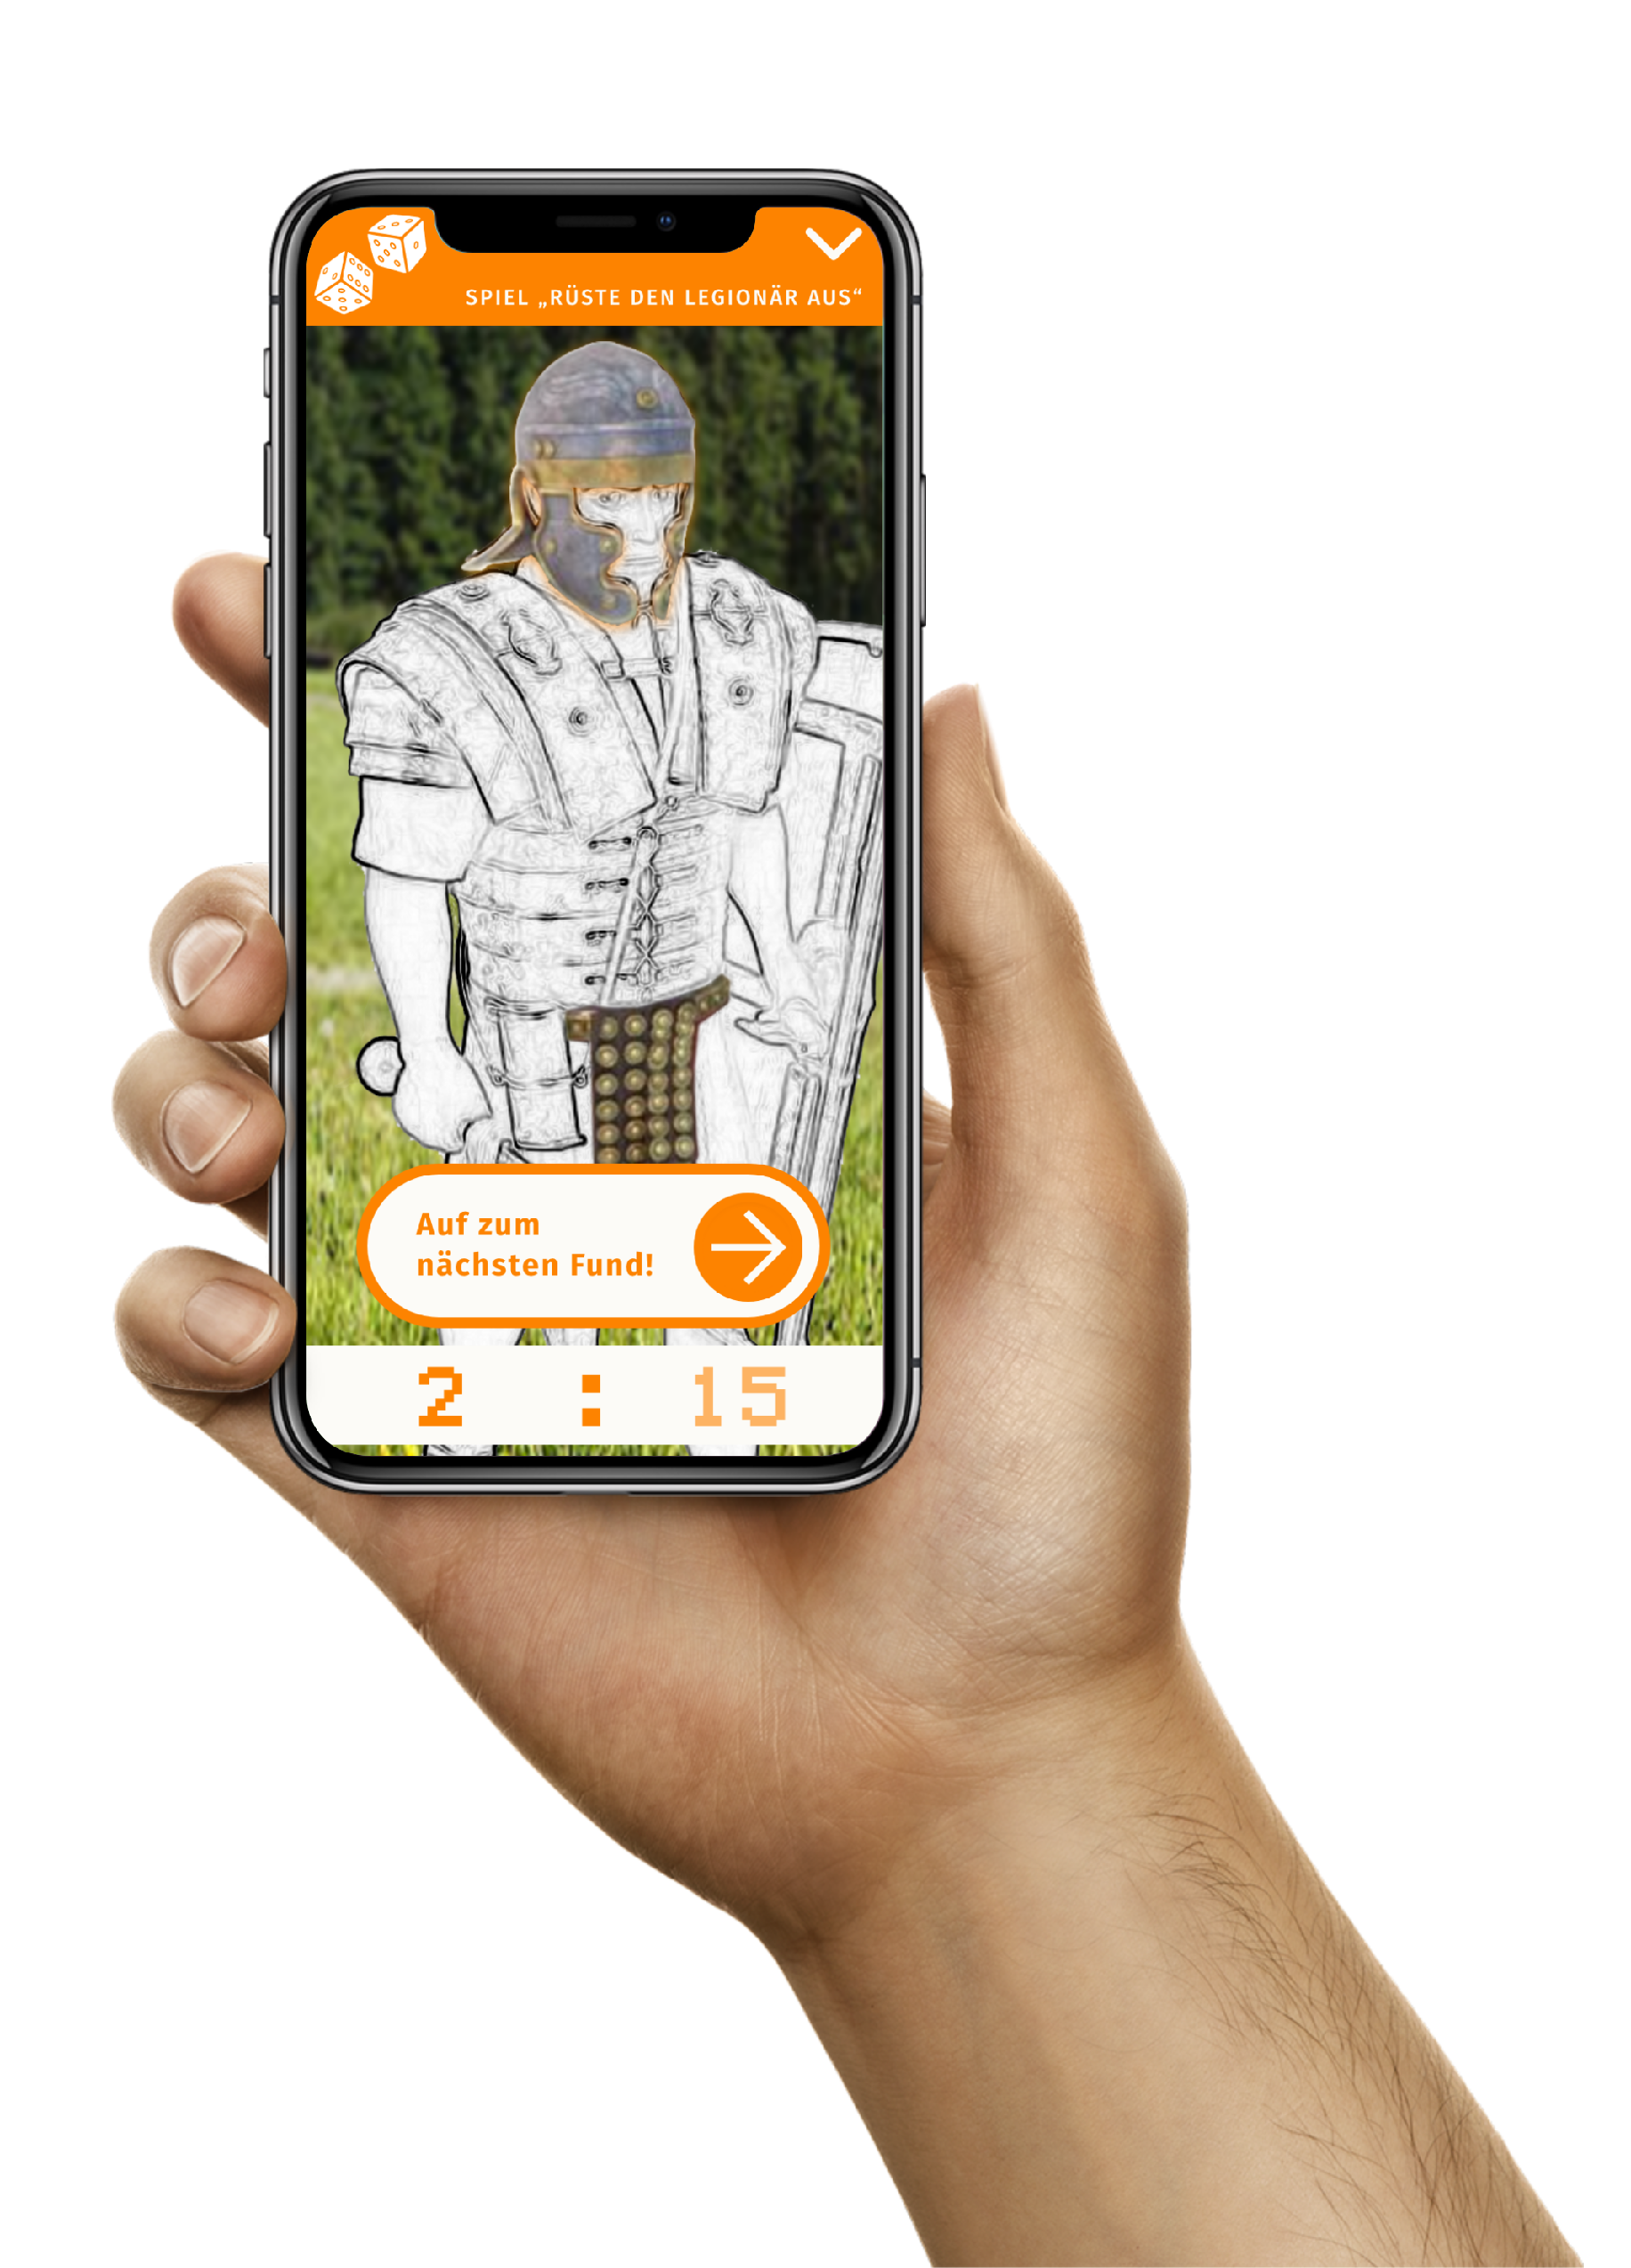 Zu sehen ist ein Smartphone mit der VAP-App und dem geöffnetem Spiel.